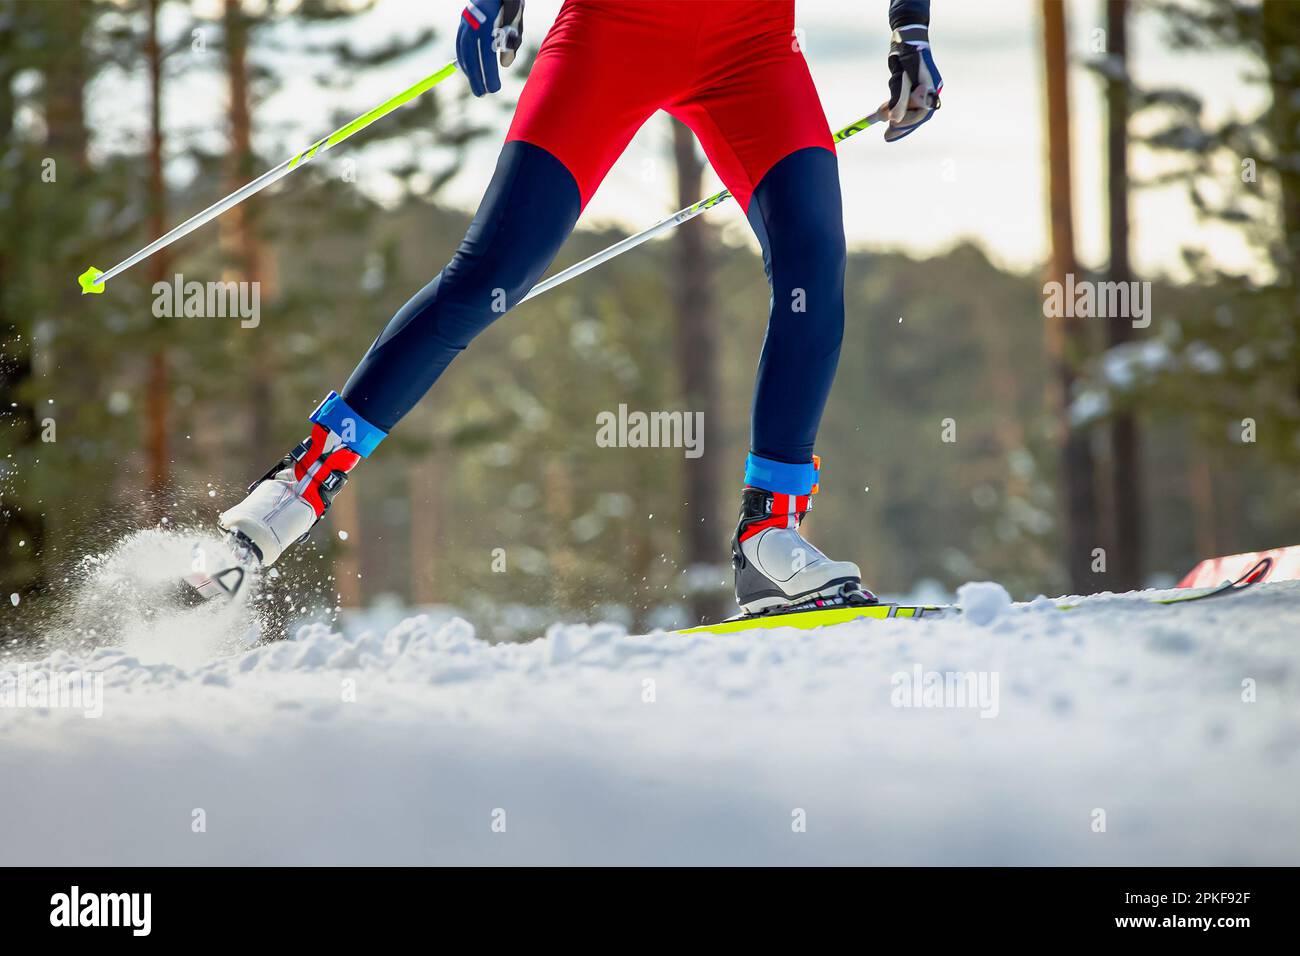 jambes athlète de skieur sur piste de ski, éclaboussures de neige sous les skis et les bâtons, compétition de sports d'hiver Banque D'Images